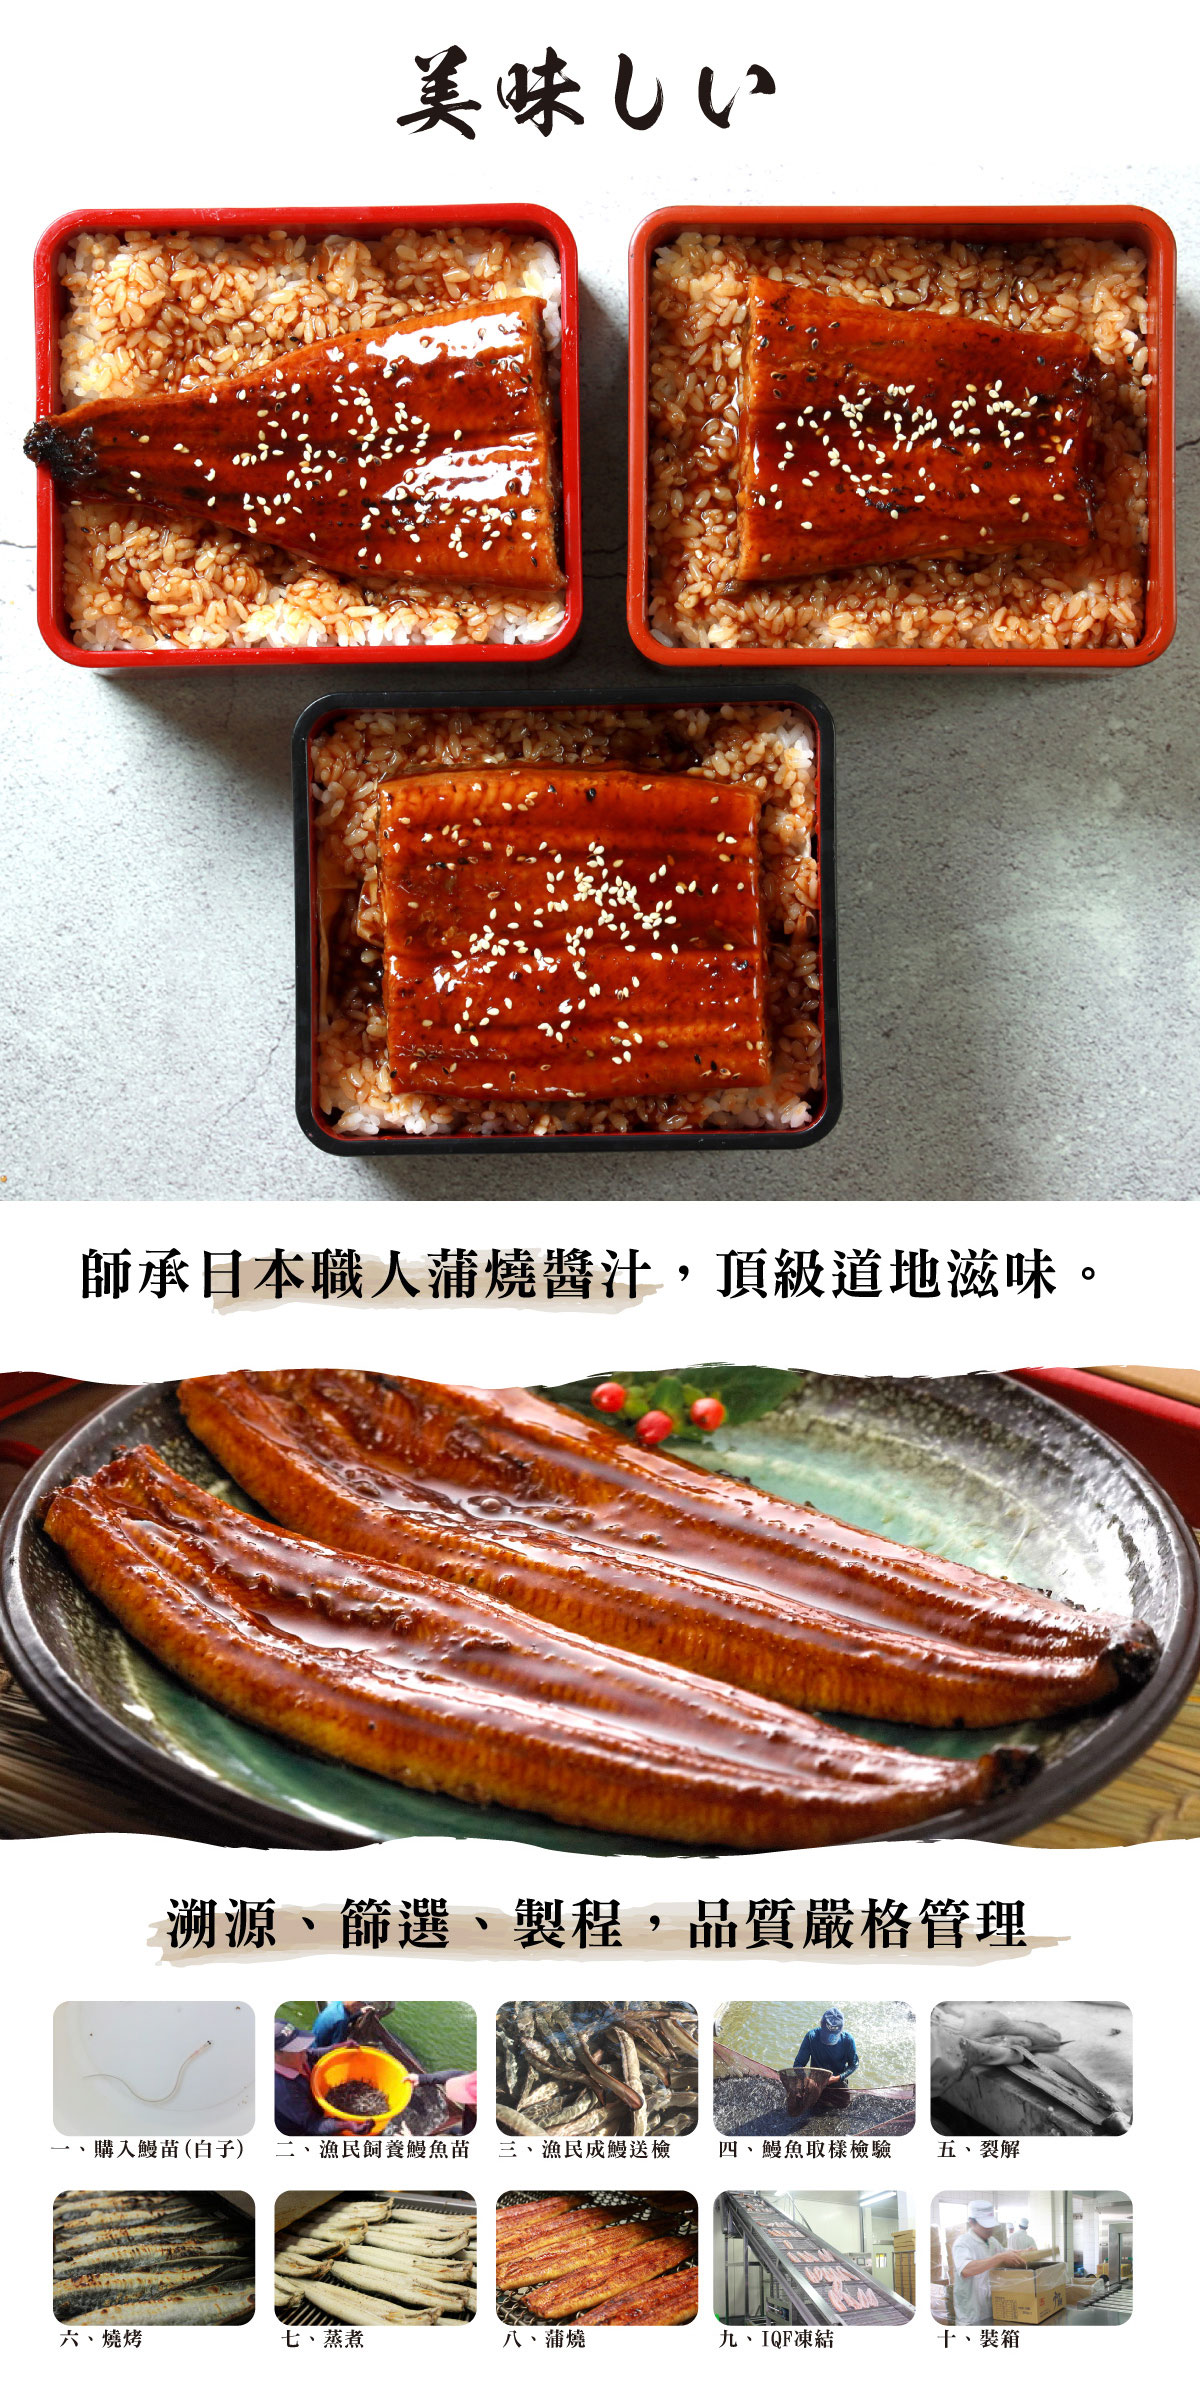 【屏榮坊】日本等級蒲燒鰻魚(400g/包) 蒲燒鰻 鰻魚 蒲燒鰻魚 鰻魚片